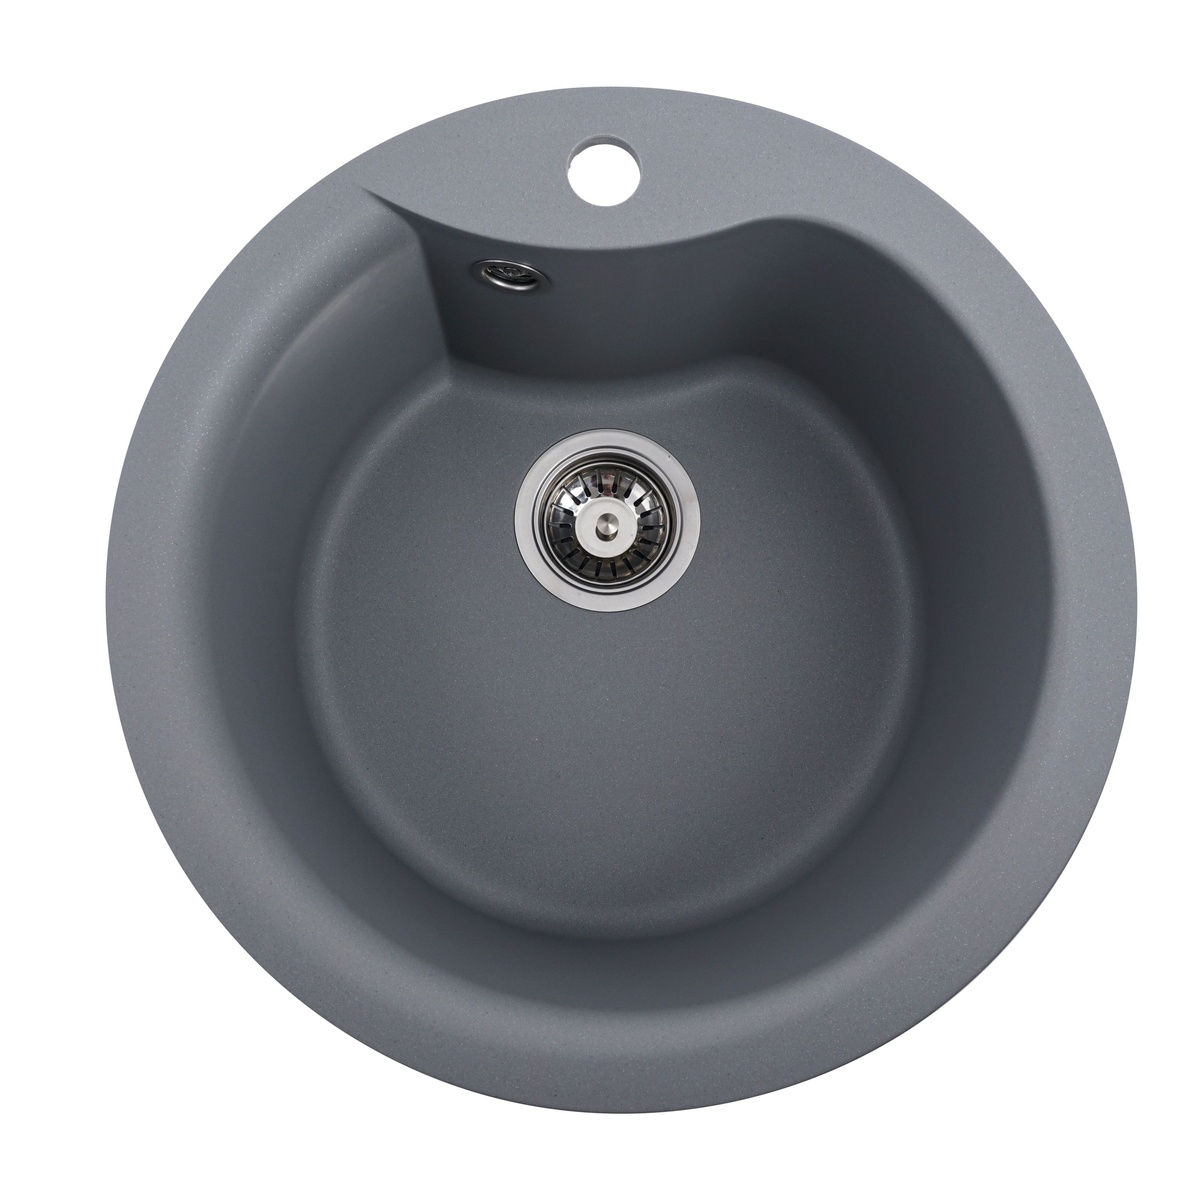 Мийка для кухні гранітна кругла PLATINUM 480 TURAS 400x400x220 мм без сифону сіра PLS-A25045